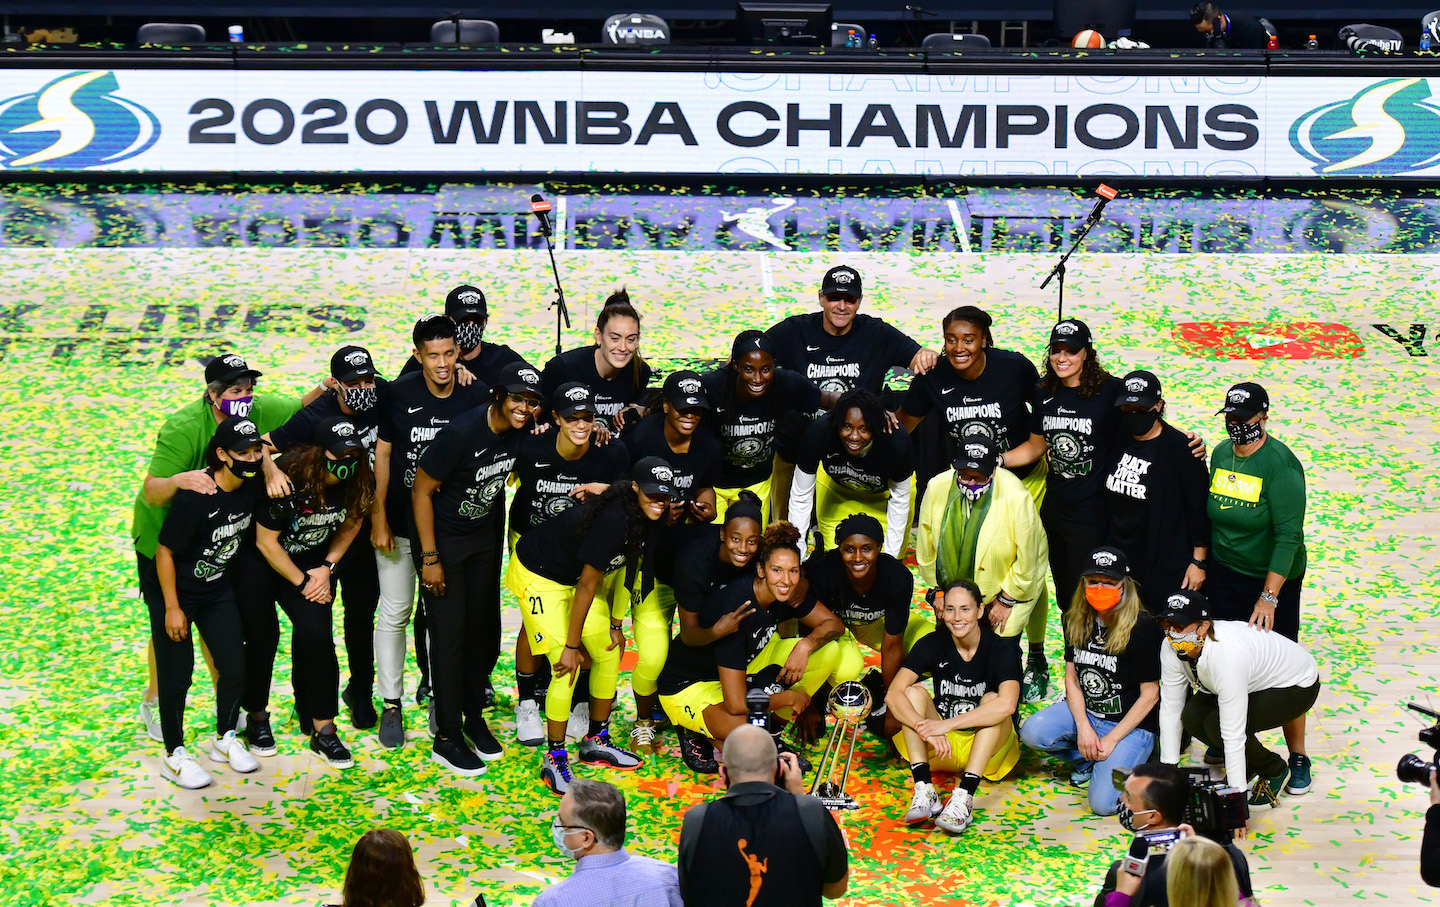 2016 WNBA Finals - Wikipedia